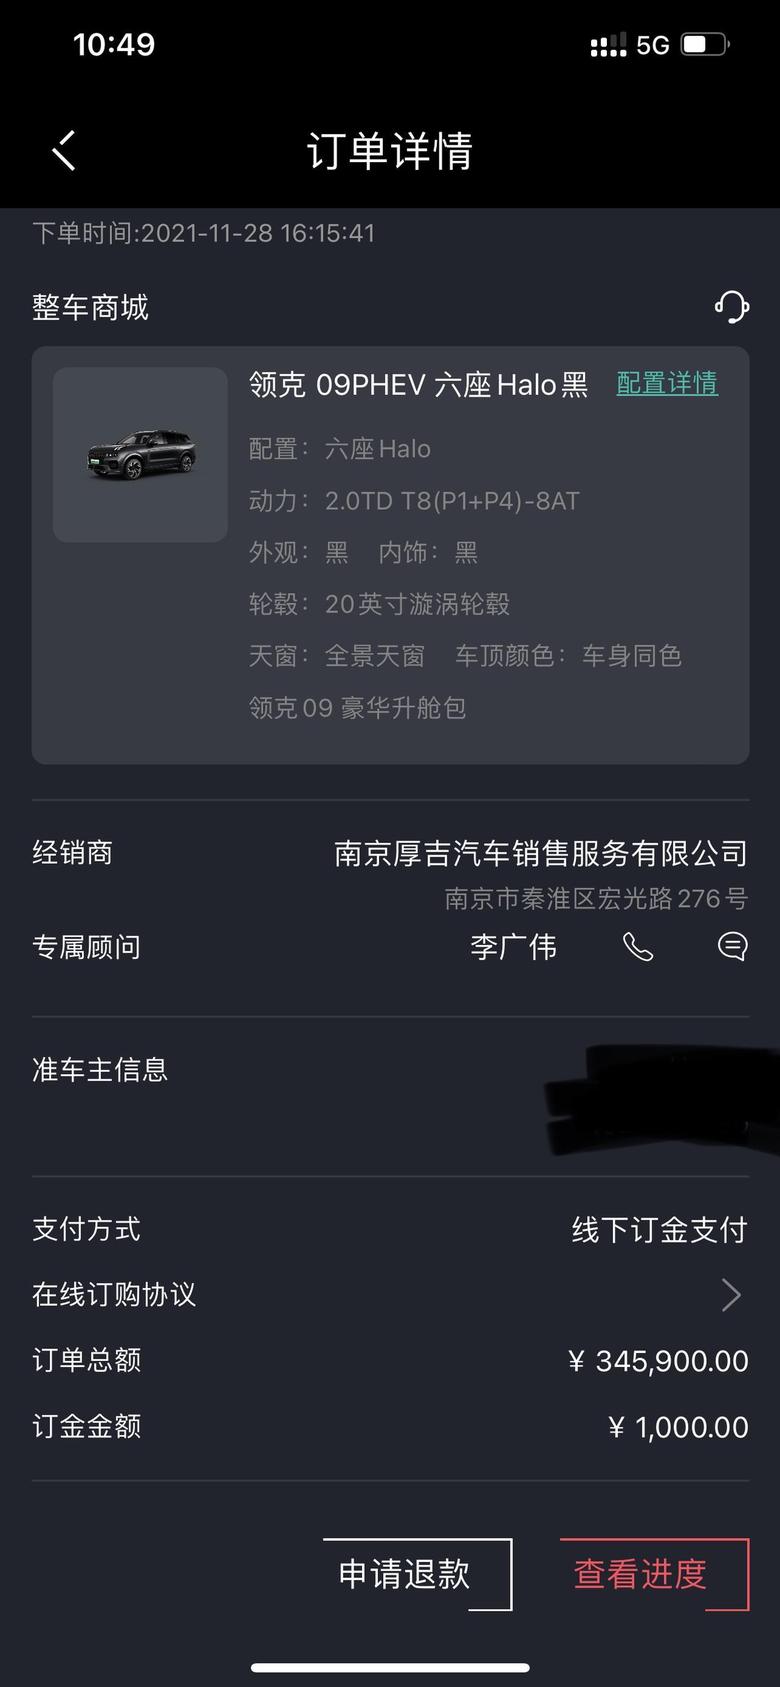 领克09 phev 昨天刚好南京有phev试驾车，简单试了一下就订车了，黑外黑内求加群